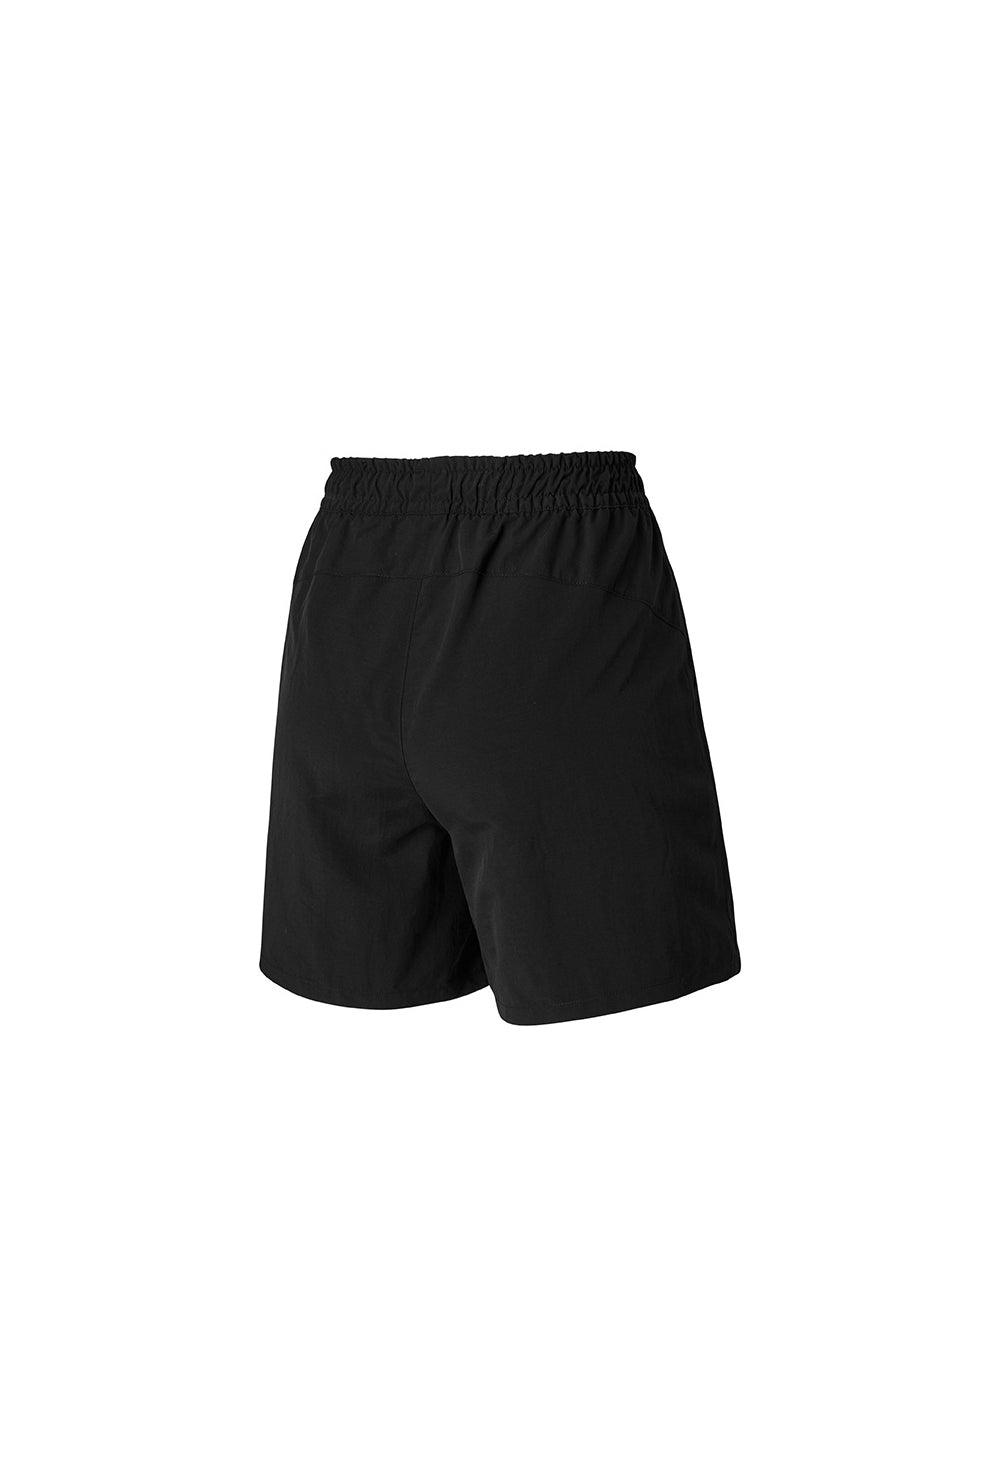 Basic Woven Half Shorts - Black (Clearance)